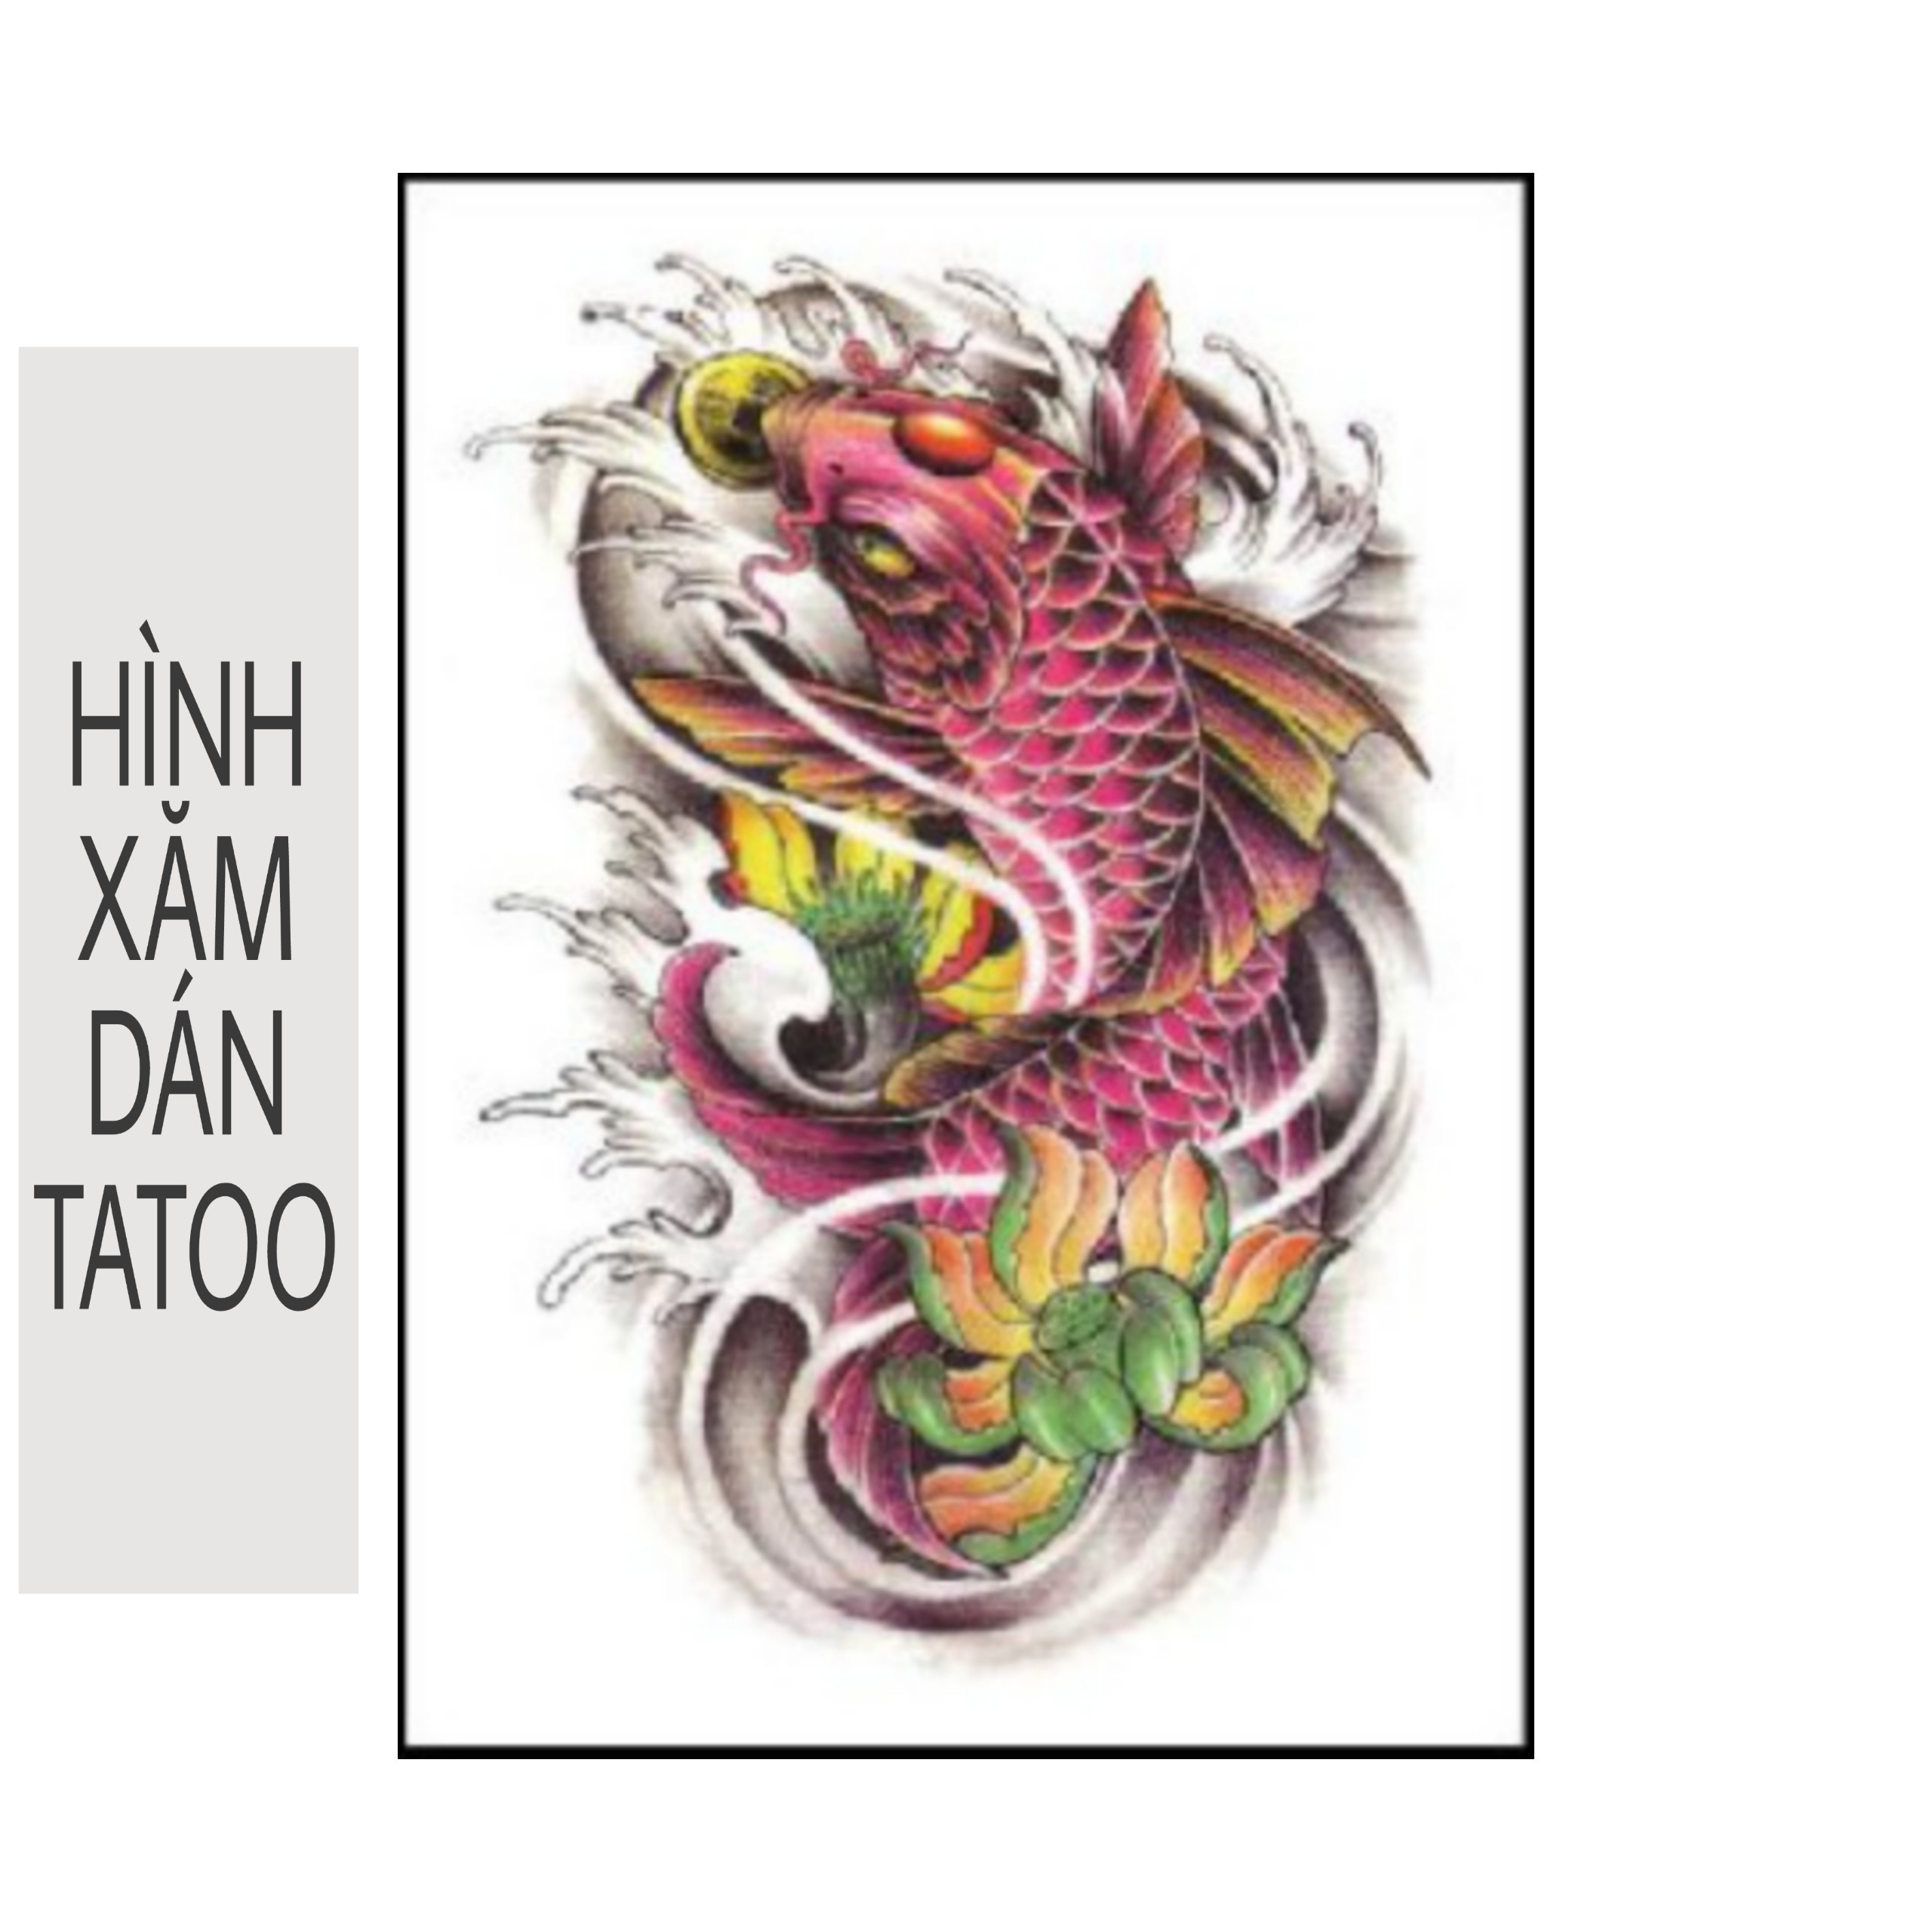 MINH TÚ TATTOO: Với tay nghề chuyên nghiệp và tâm huyết, Minh Tú Tattoo đã khắc họa những tác phẩm nghệ thuật trên da có 1-0-